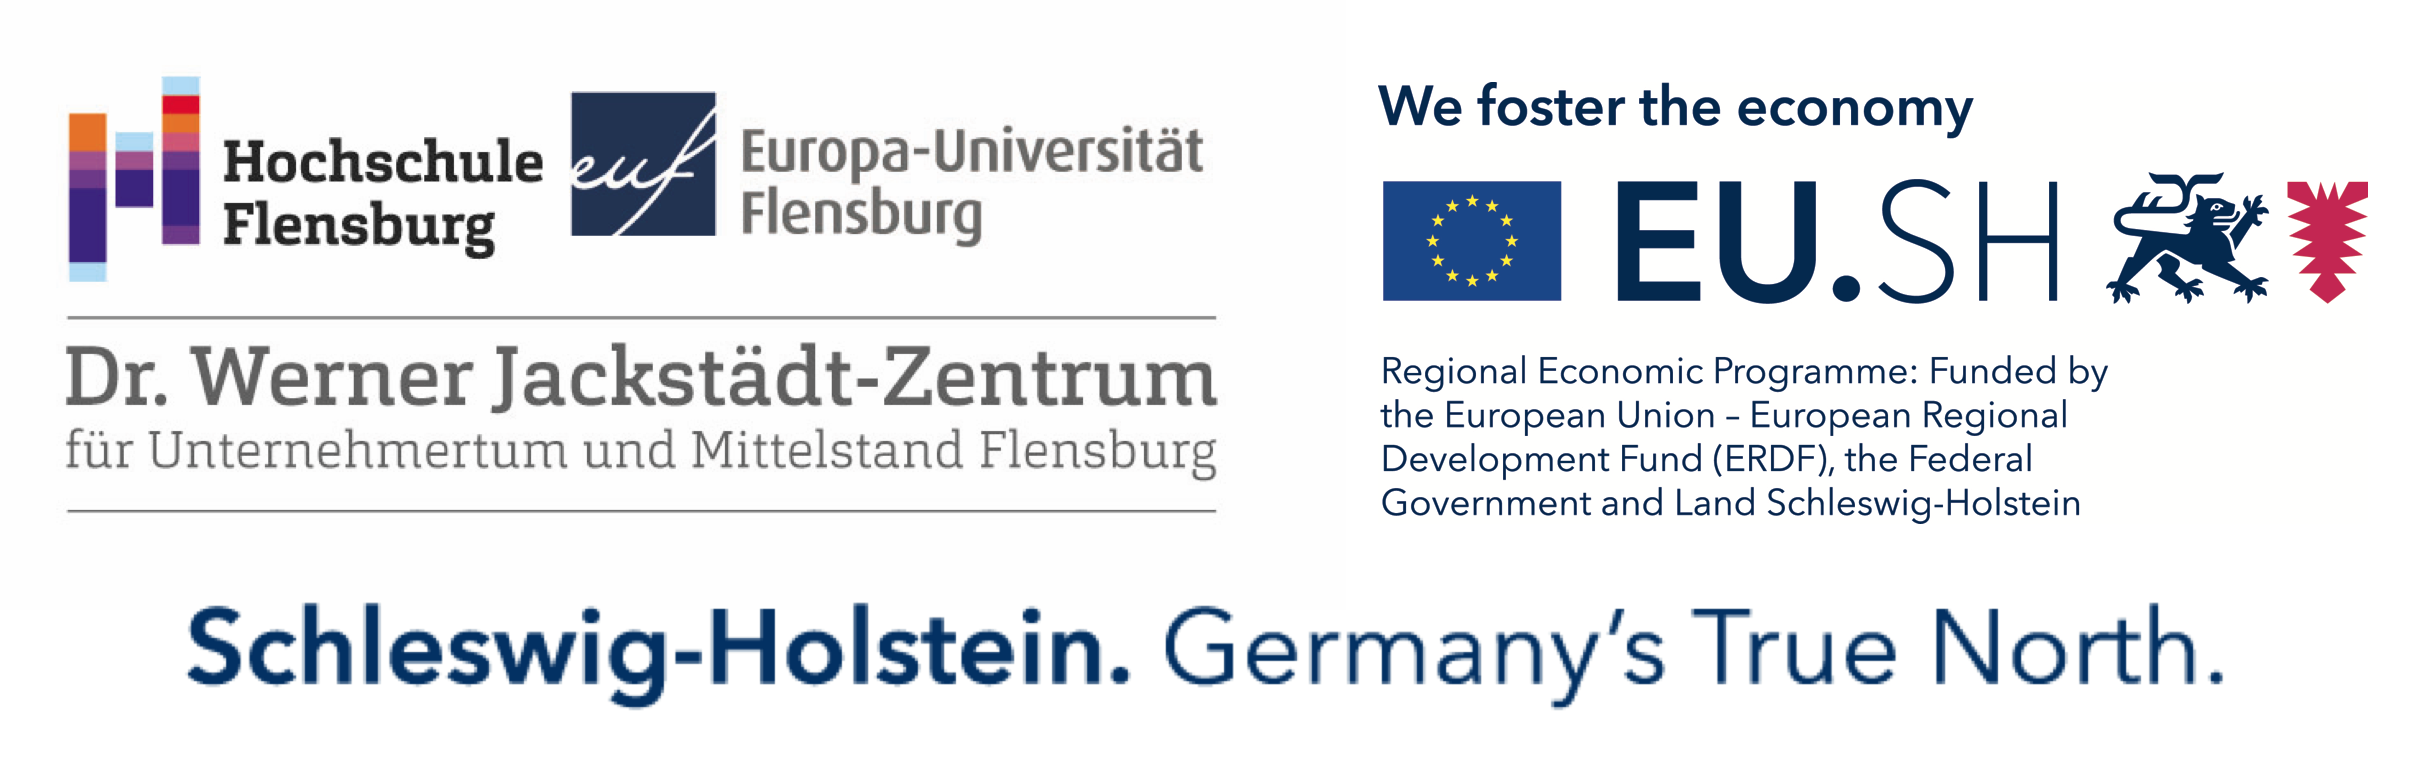 Logoauflistung Hochschule Flensburg und Europa Universität Flensburg